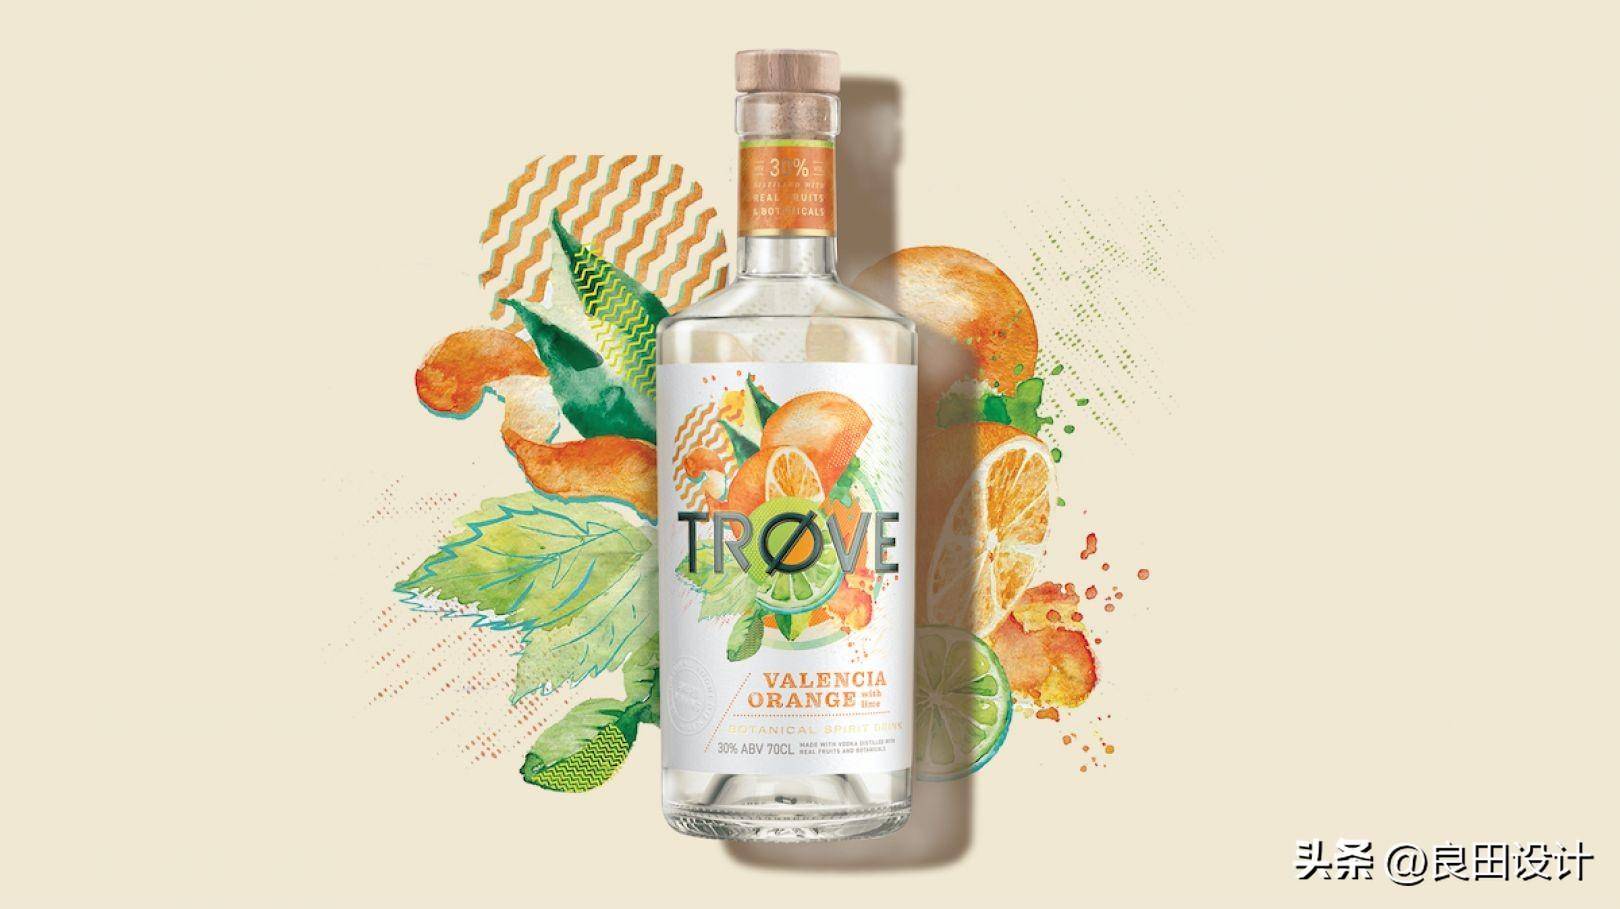 苹果主题插图手绘版:为新的低酒精、低热量烈酒品牌 TRØVE 创作的酒包装设计-第6张图片-太平洋在线下载